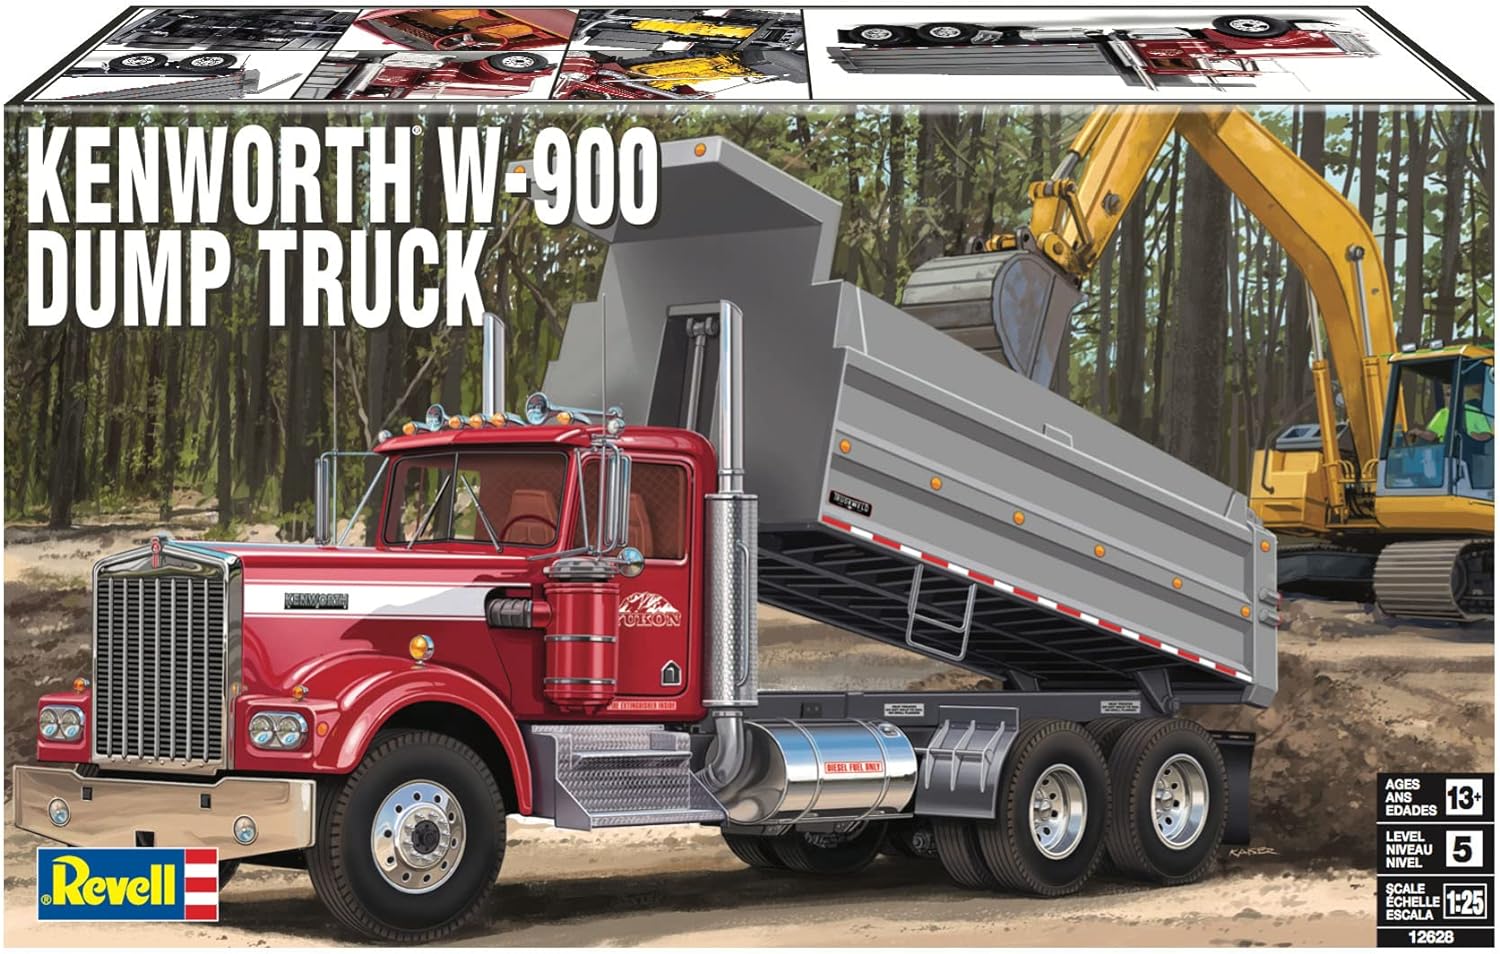 Revell 12628 Kenworth W-900 Dump Truck 1/25 Scale Model Kit